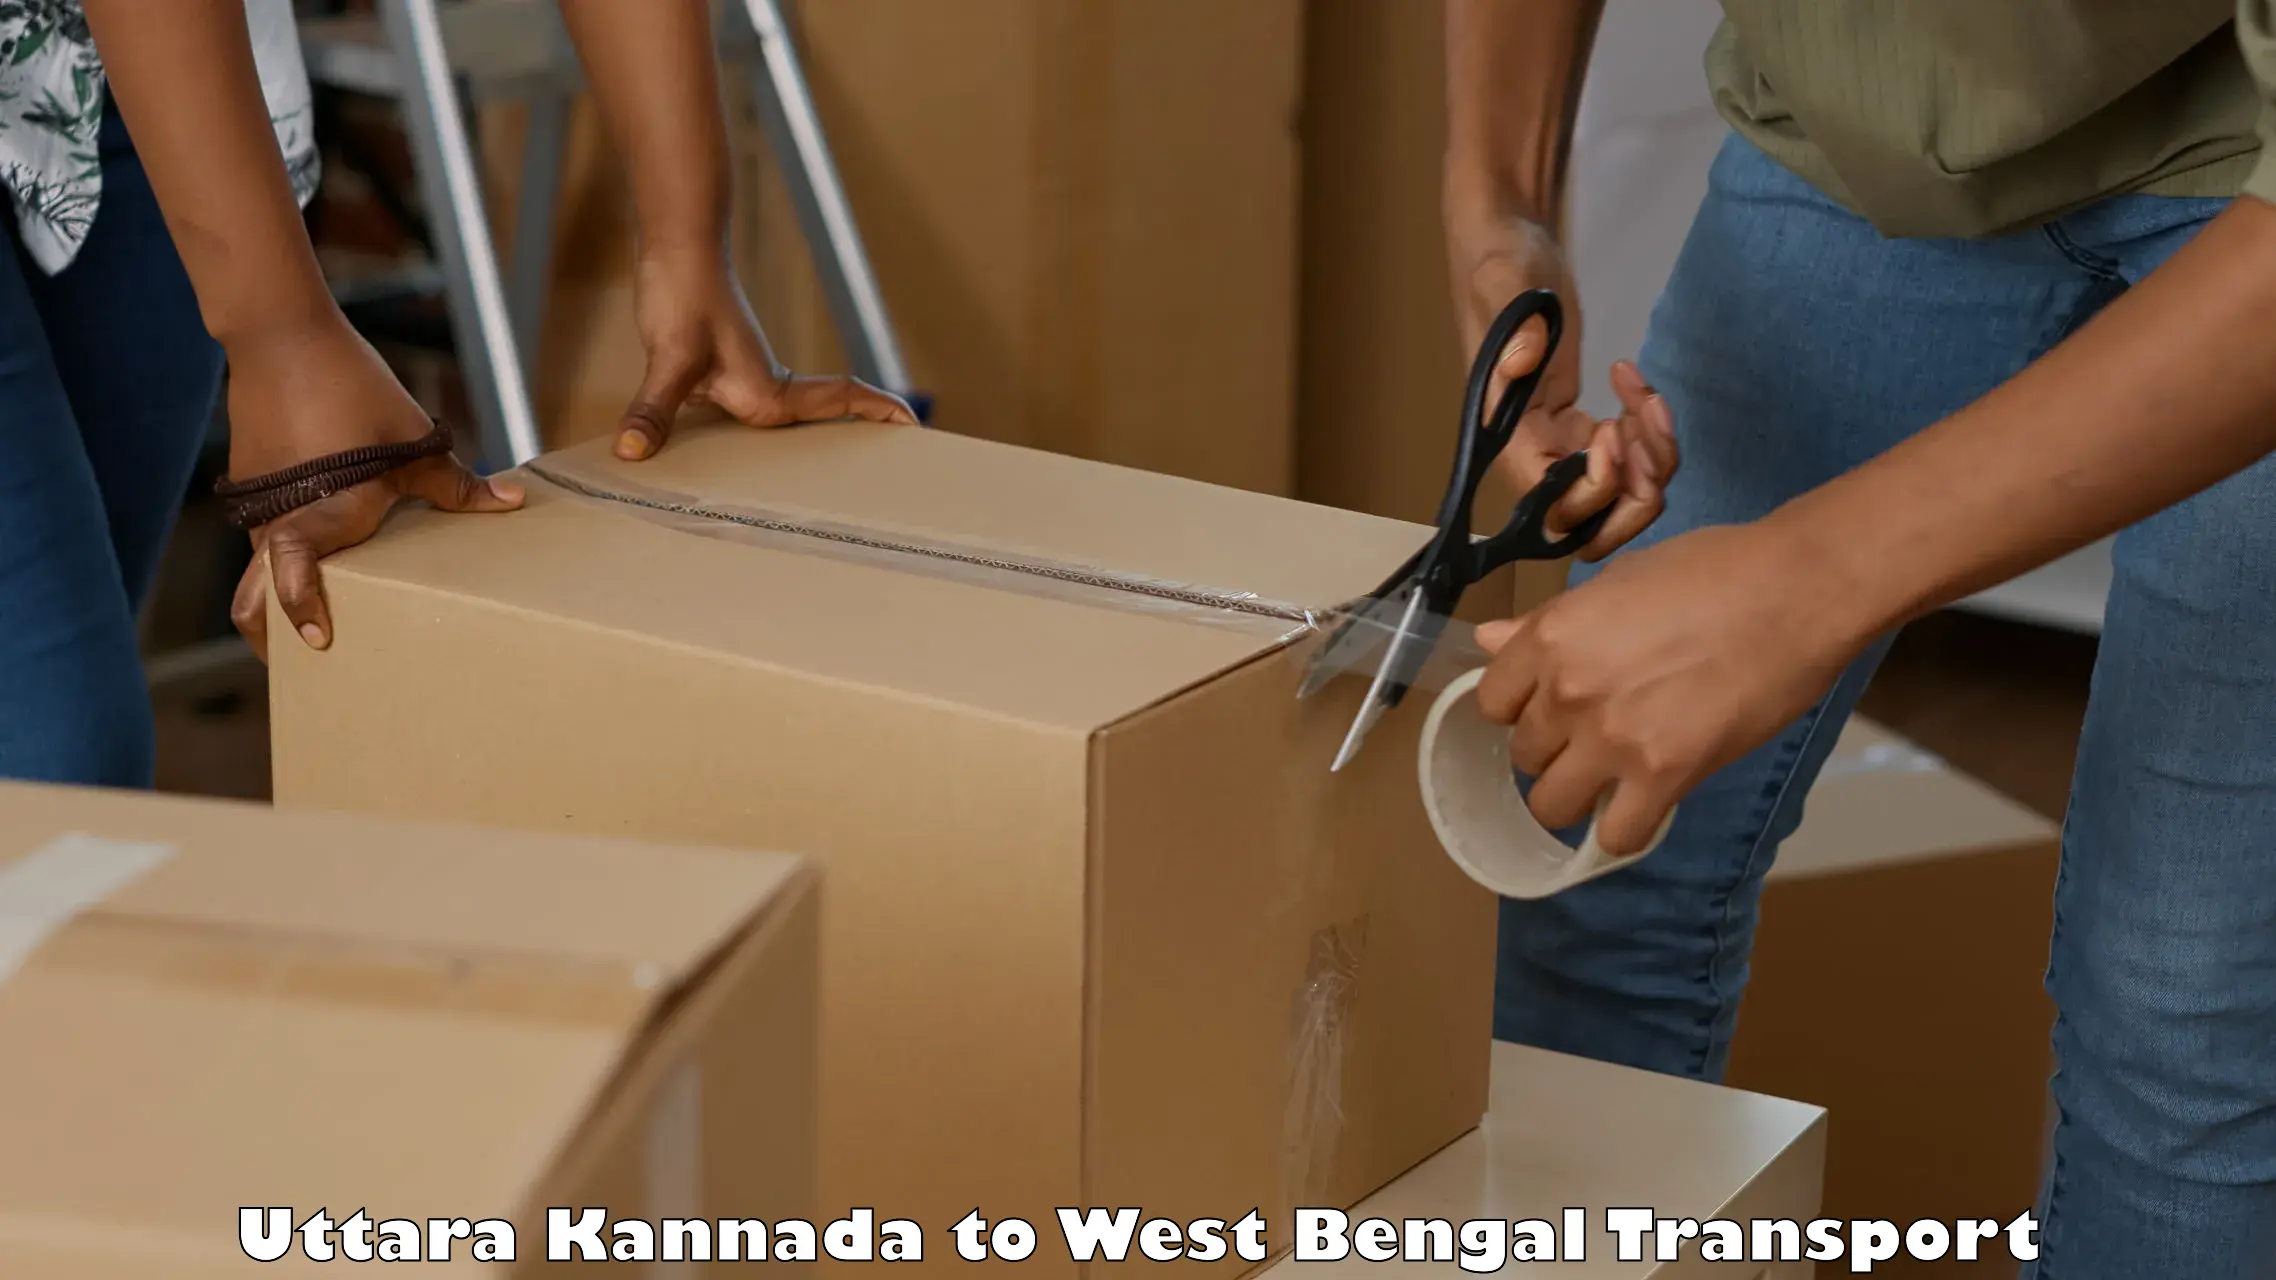 Intercity goods transport Uttara Kannada to North 24 Parganas